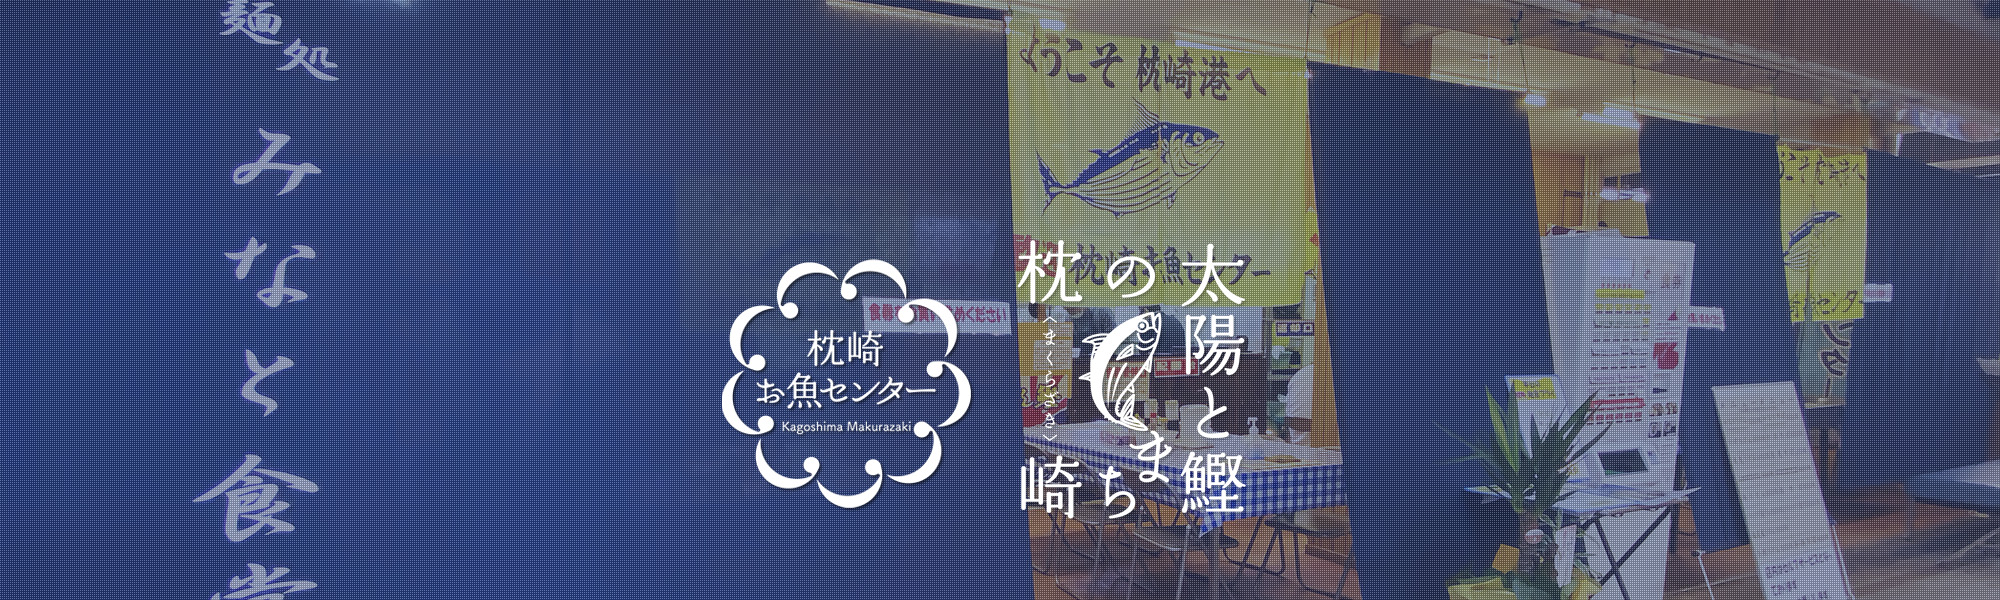 枕崎お魚センターお食事処「みなと食堂」イメージ画像